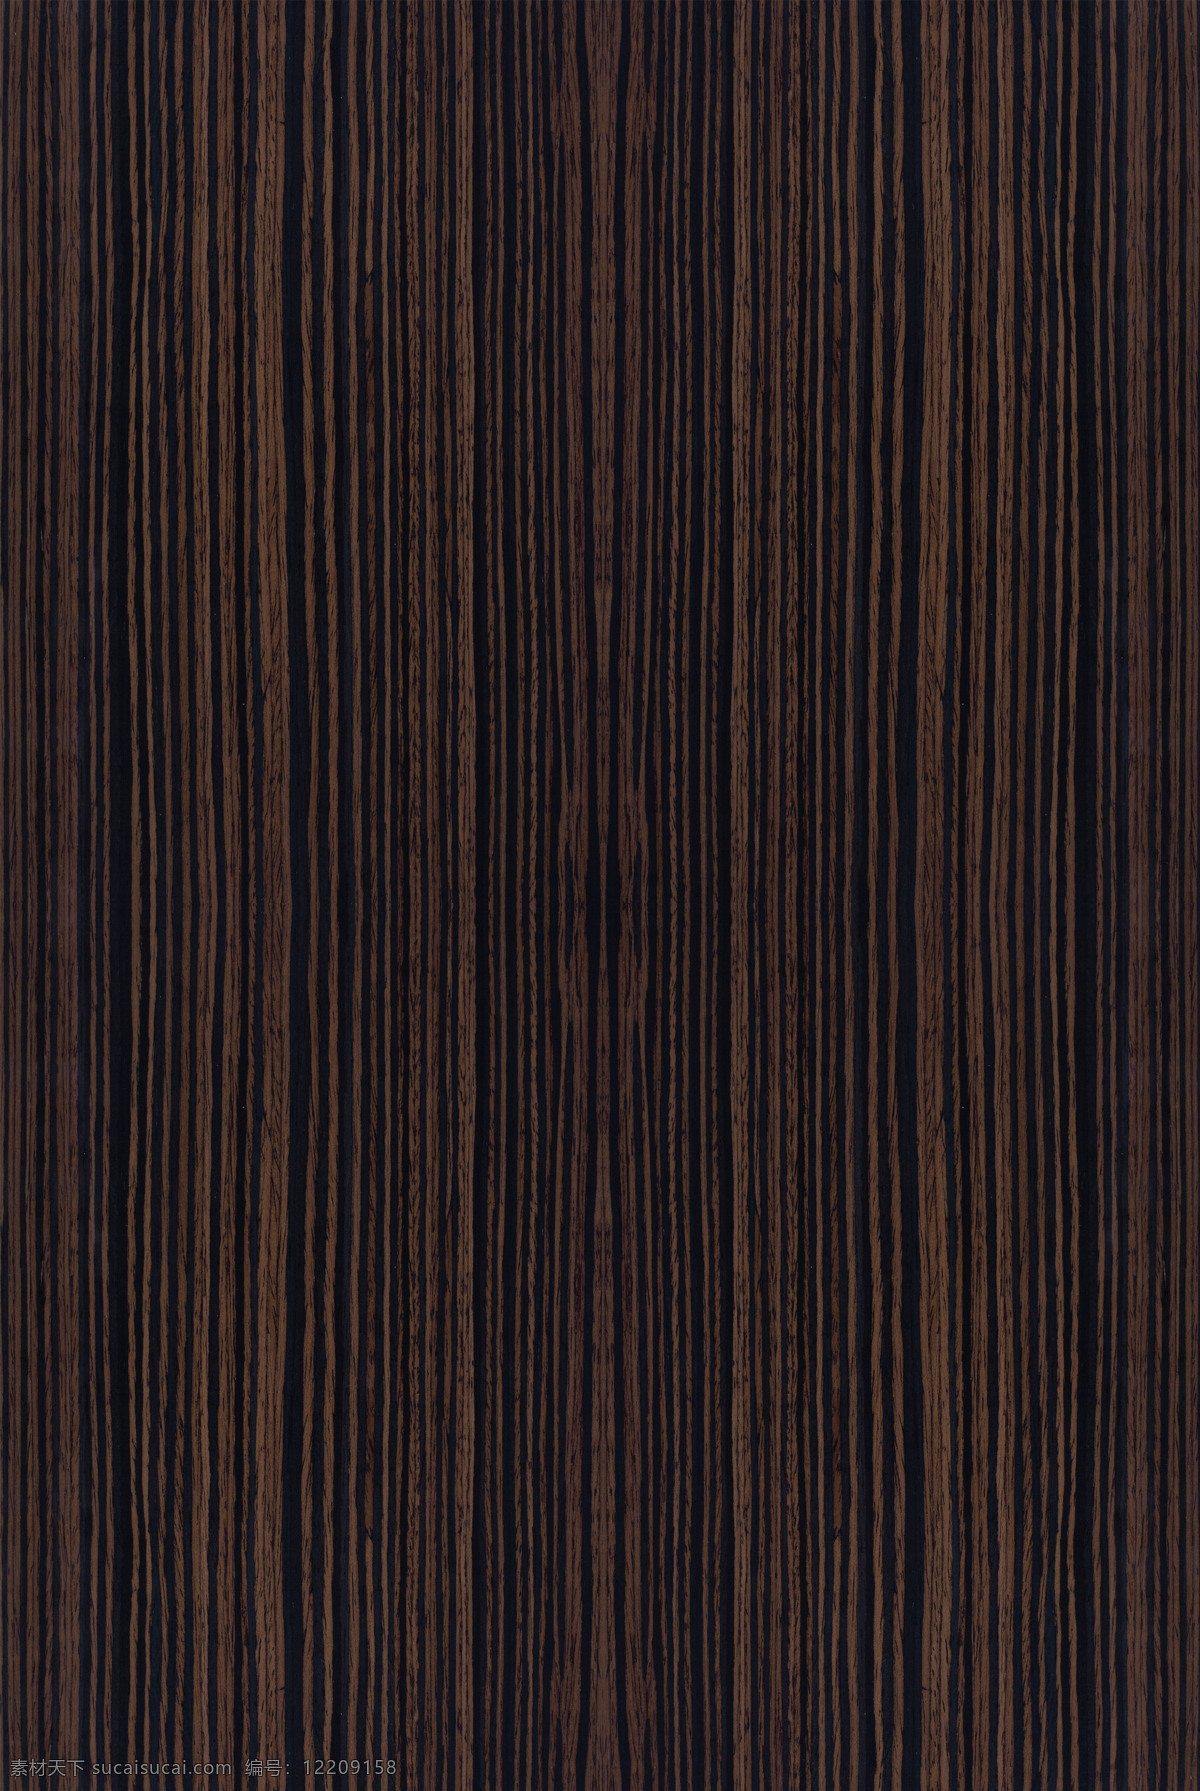 乌金黑檀 木纹贴图 木皮 3d贴图 uv板 木饰面 高清贴图 无缝拼图 3d设计 其他模型